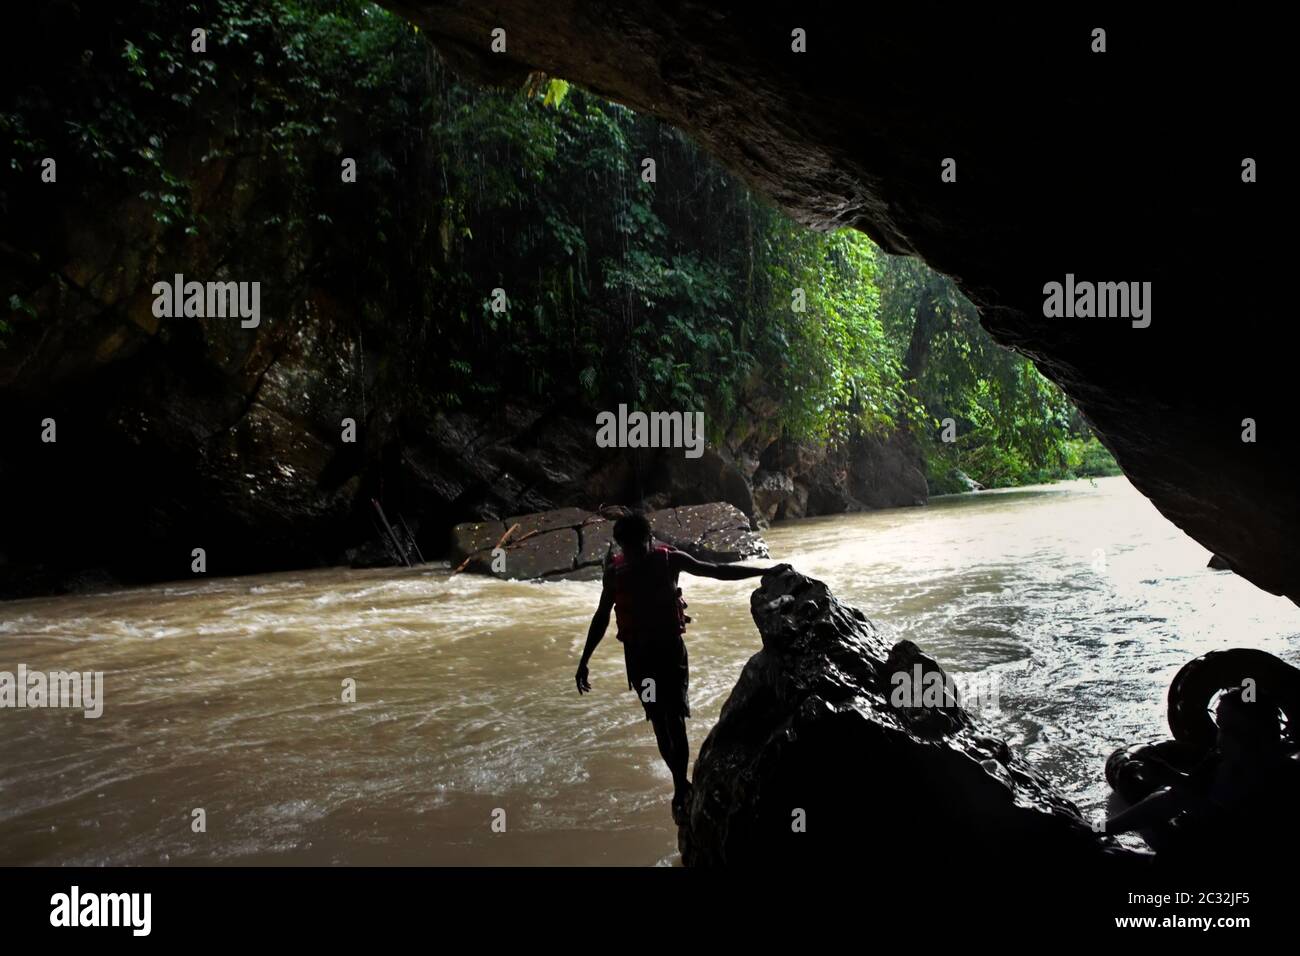 Un guide aventure se déplaçant sur la sortie rocheuse de la grotte de Kalong (Bat) pour commencer l'activité de tubing de rivière lors d'un jour pluvieux à Tangkahan, Sumatra, Indonésie. Banque D'Images